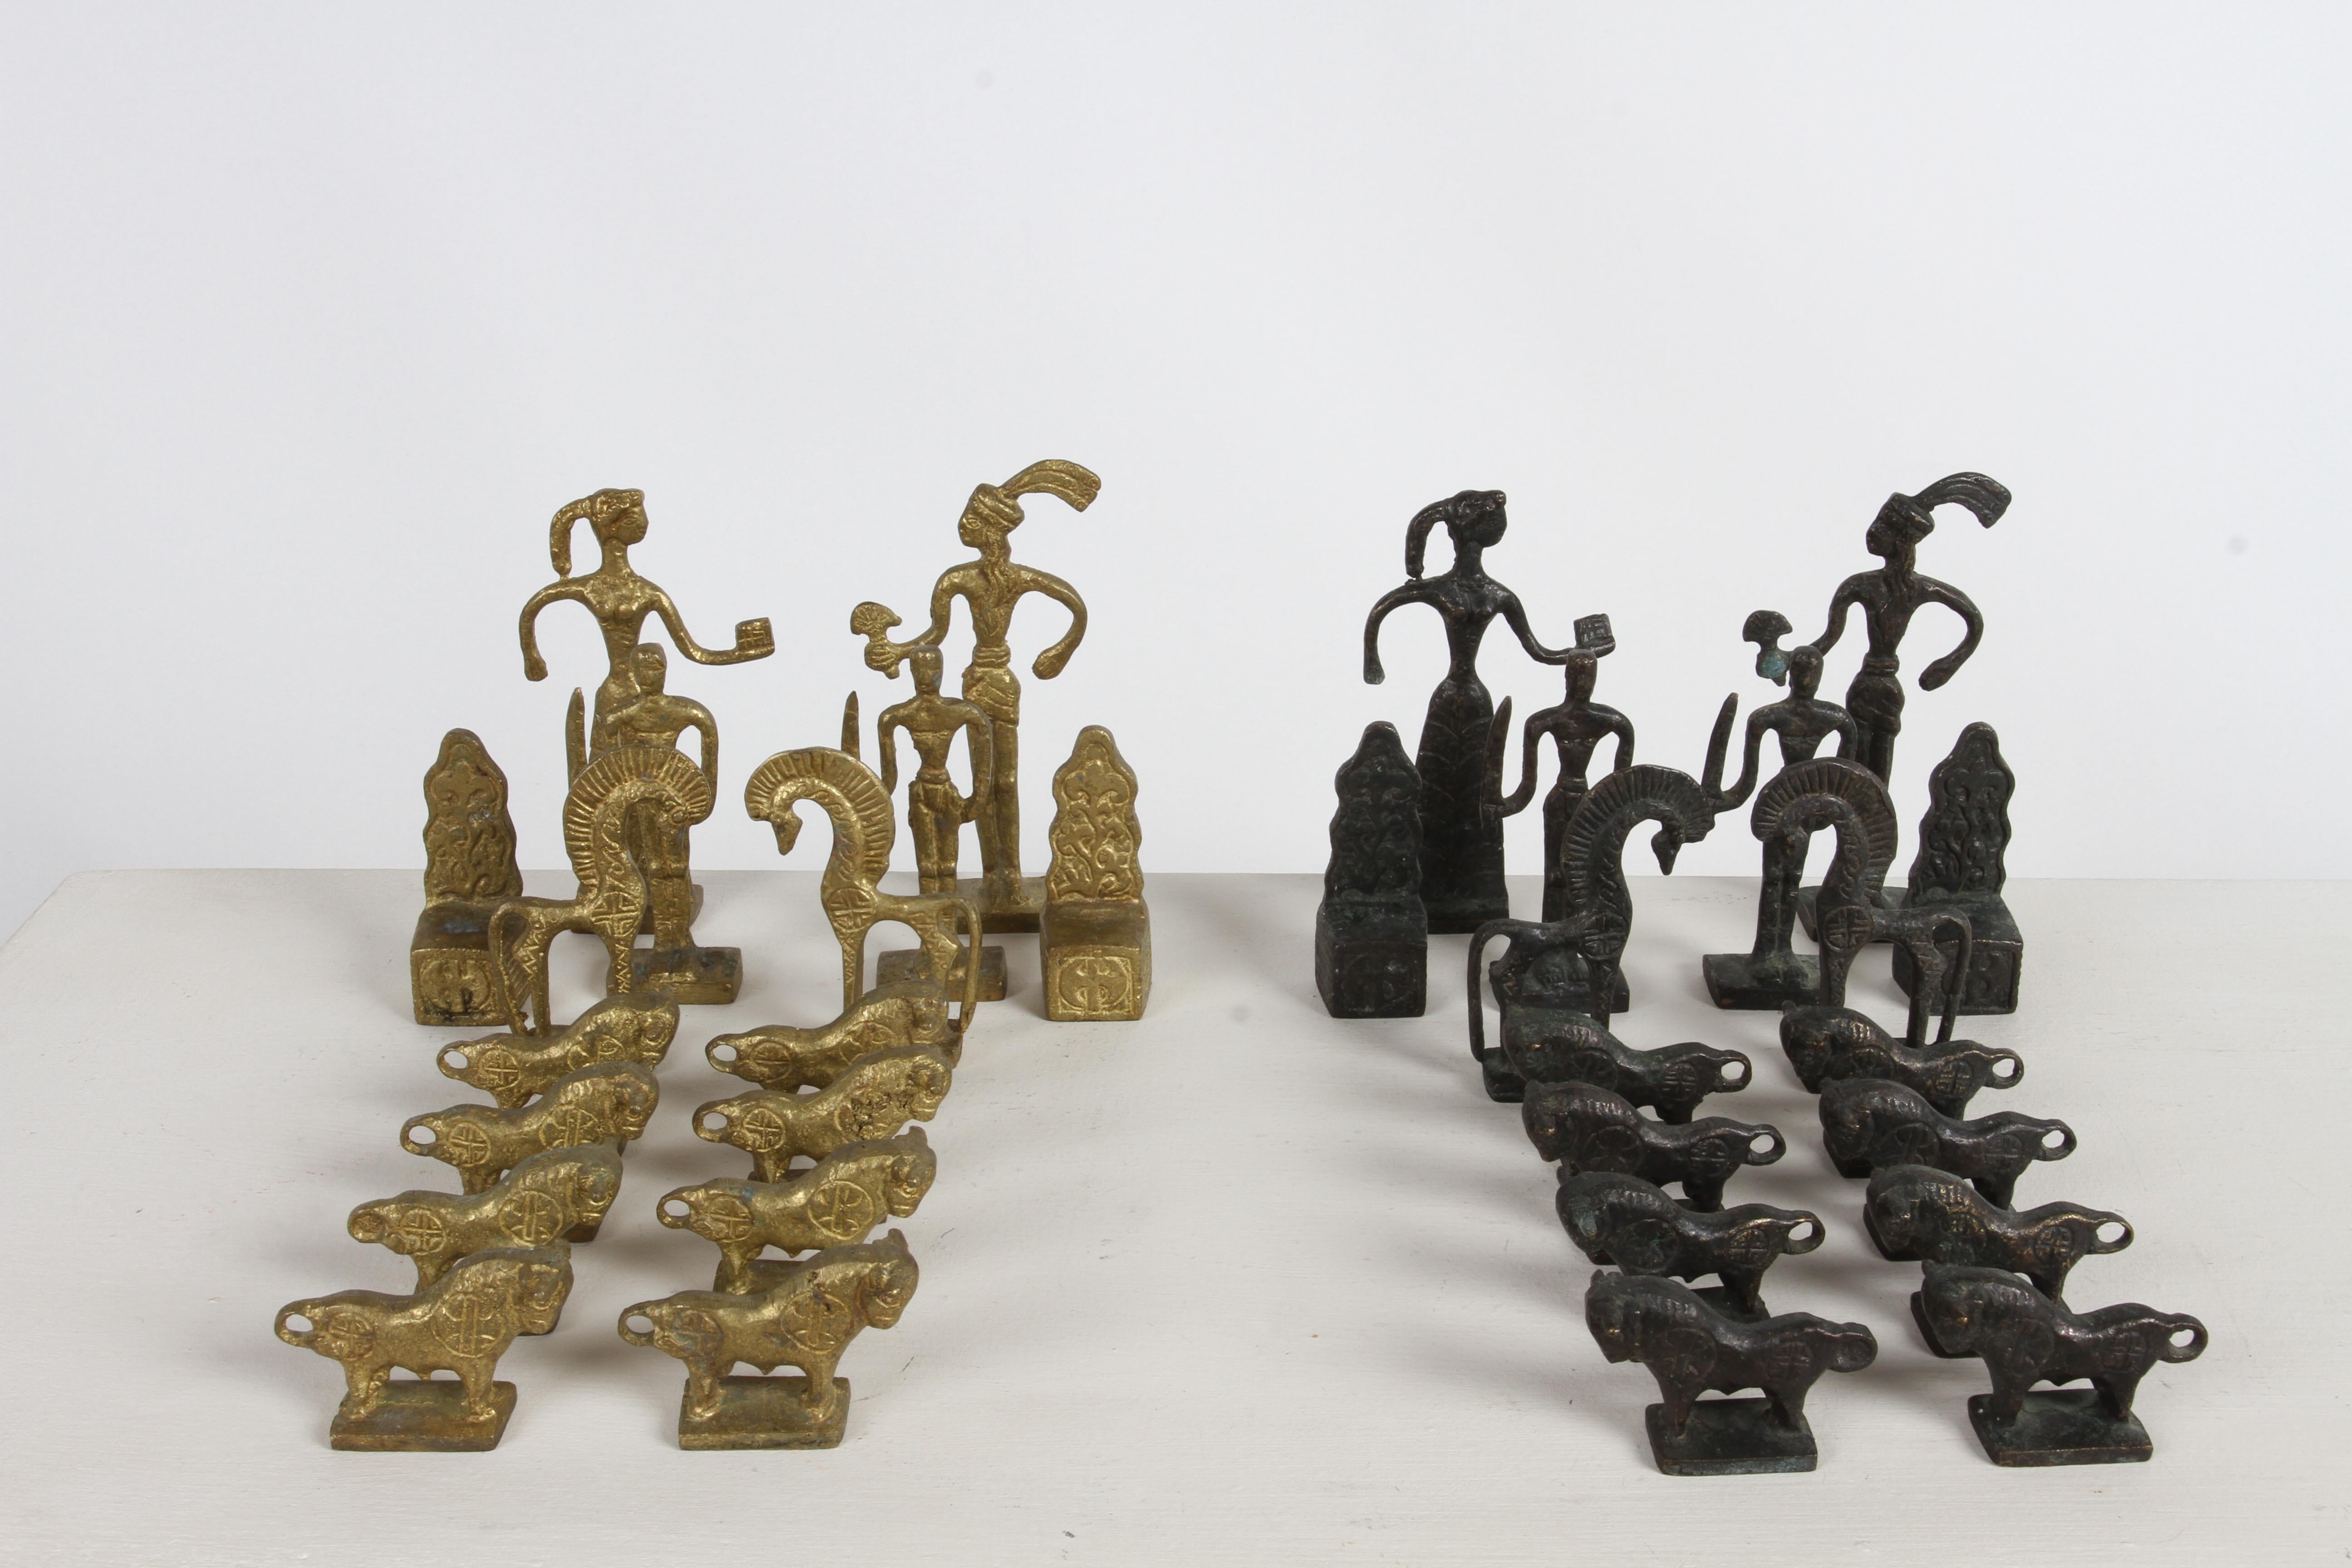 Rare jeu d'échecs complet en bronze fait à la main par Christoforus Sklavenitis, un célèbre artiste grec en béton qui fut l'élève de Modigliani. Les pièces ont été fabriquées selon la méthode de la cire perdue, une face est en bronze naturel,